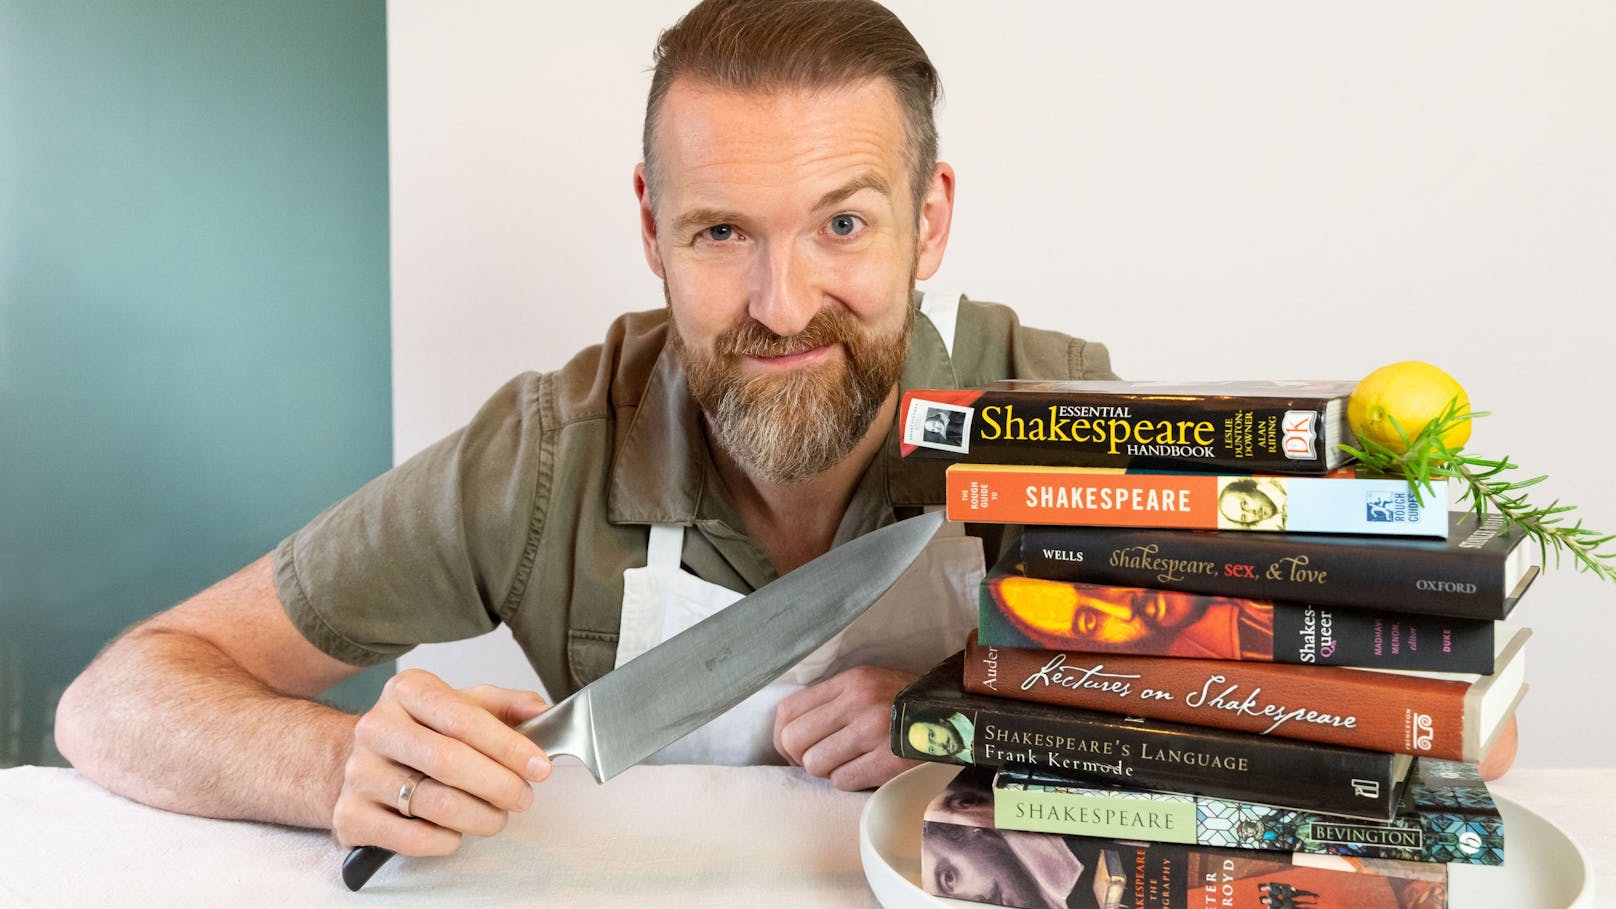 Theaterkarten für "Schauküche Shakespeare" zu gewinnen